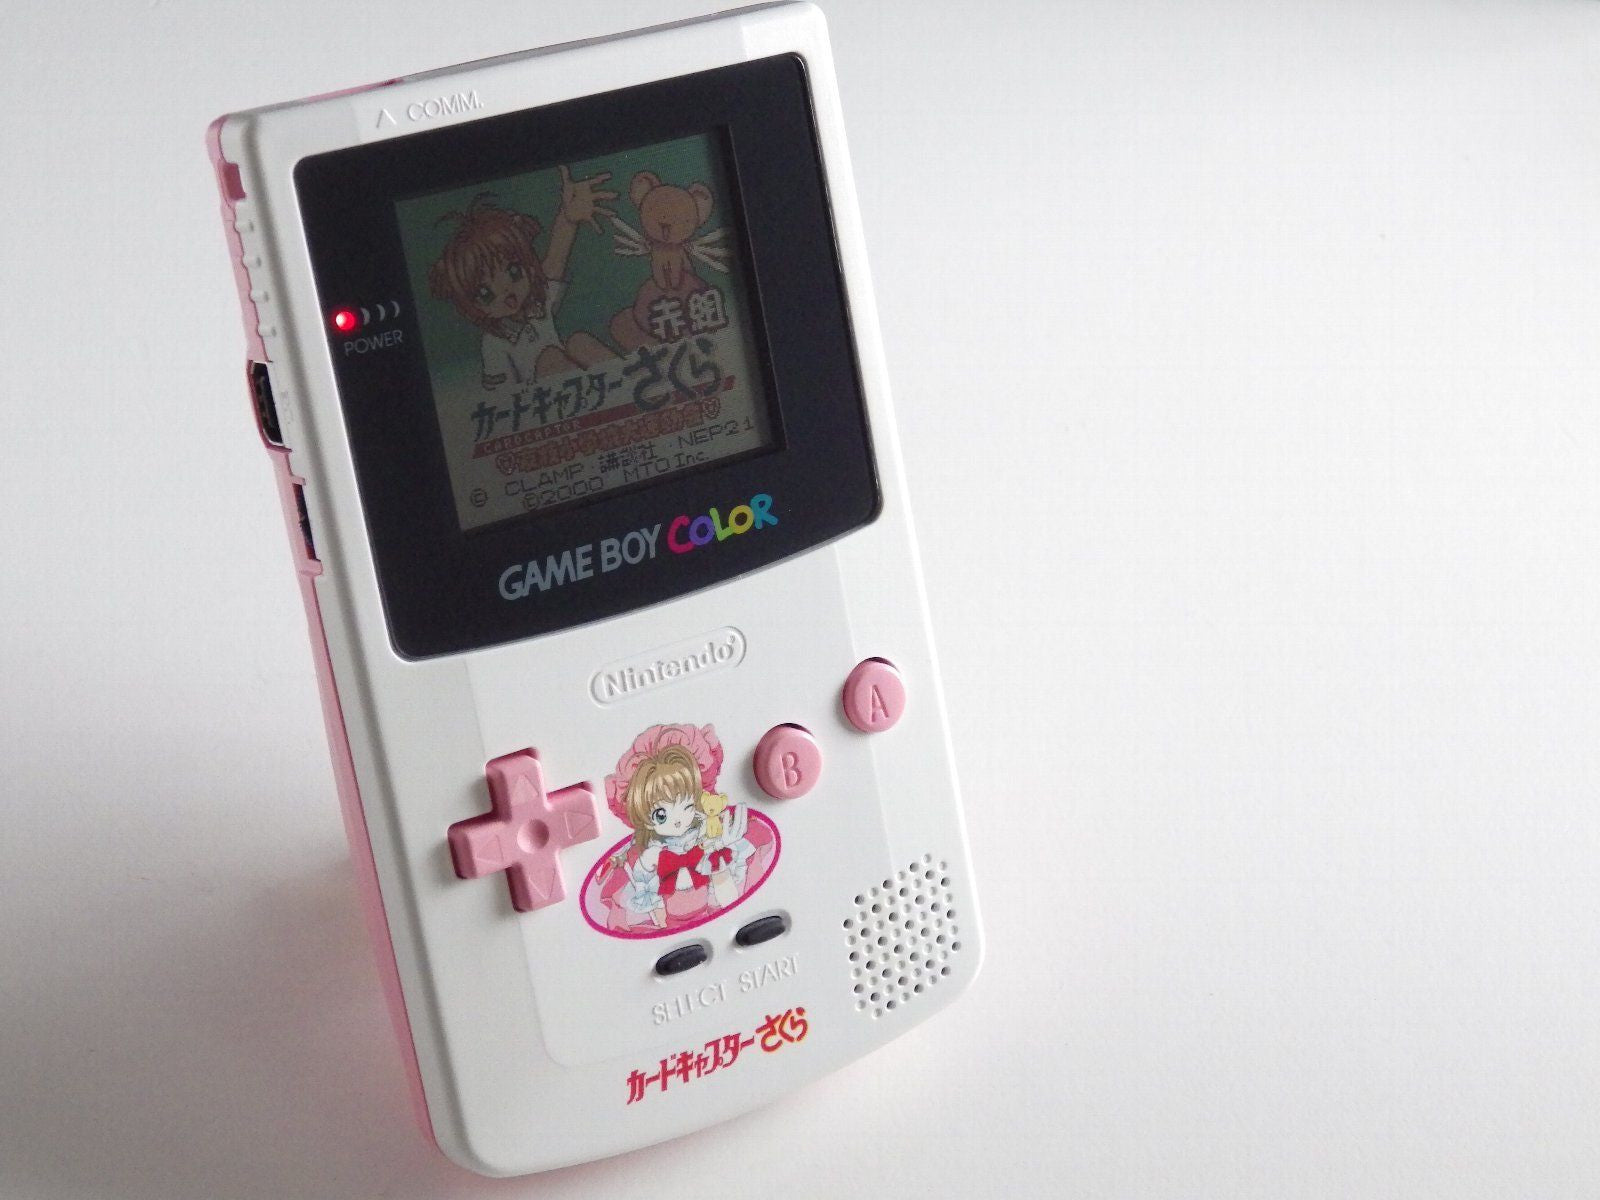 Game Boy Color System Pink For Sale Nintendo